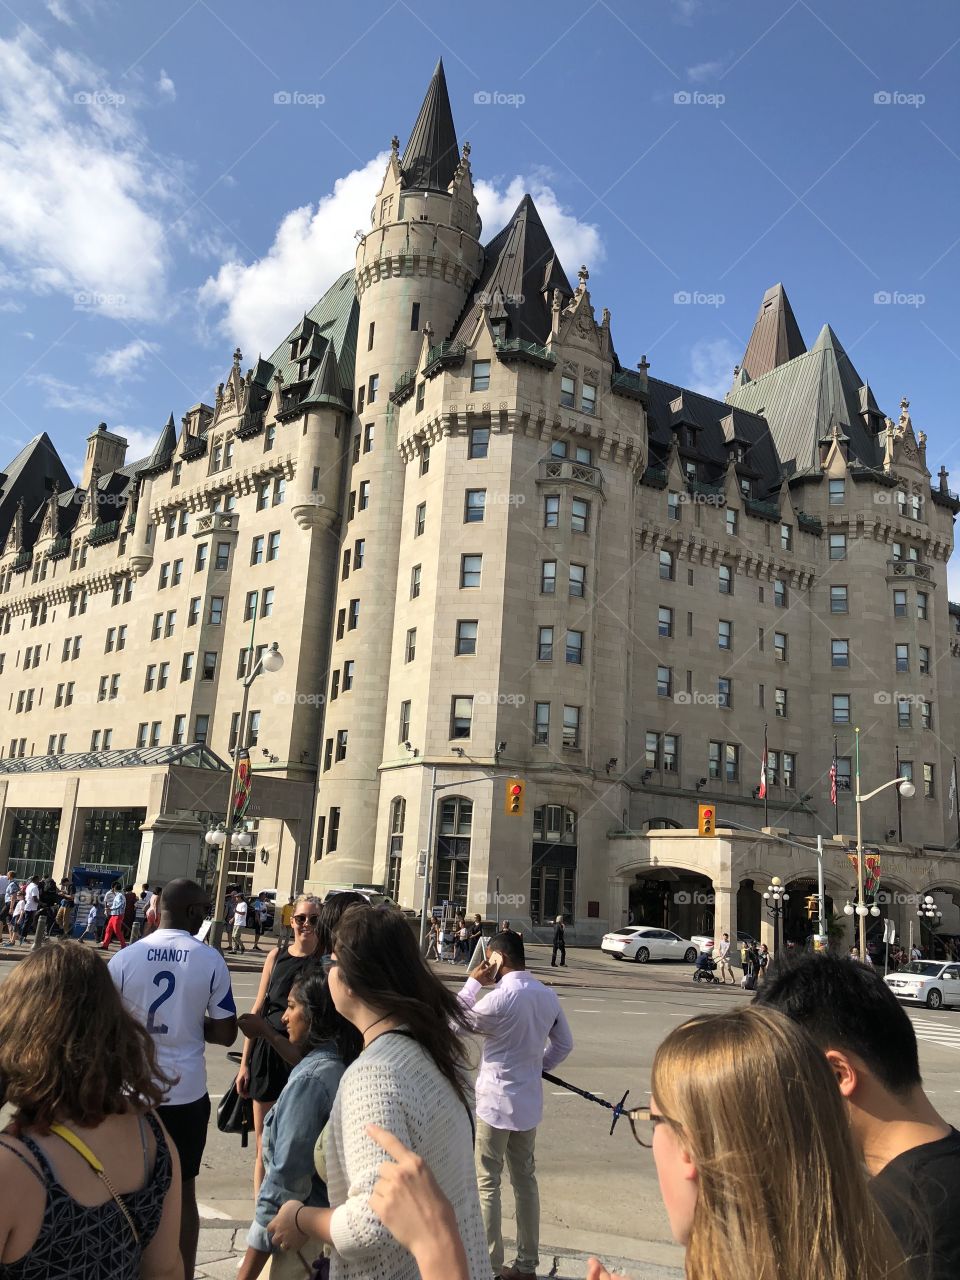 Ottawa Visit